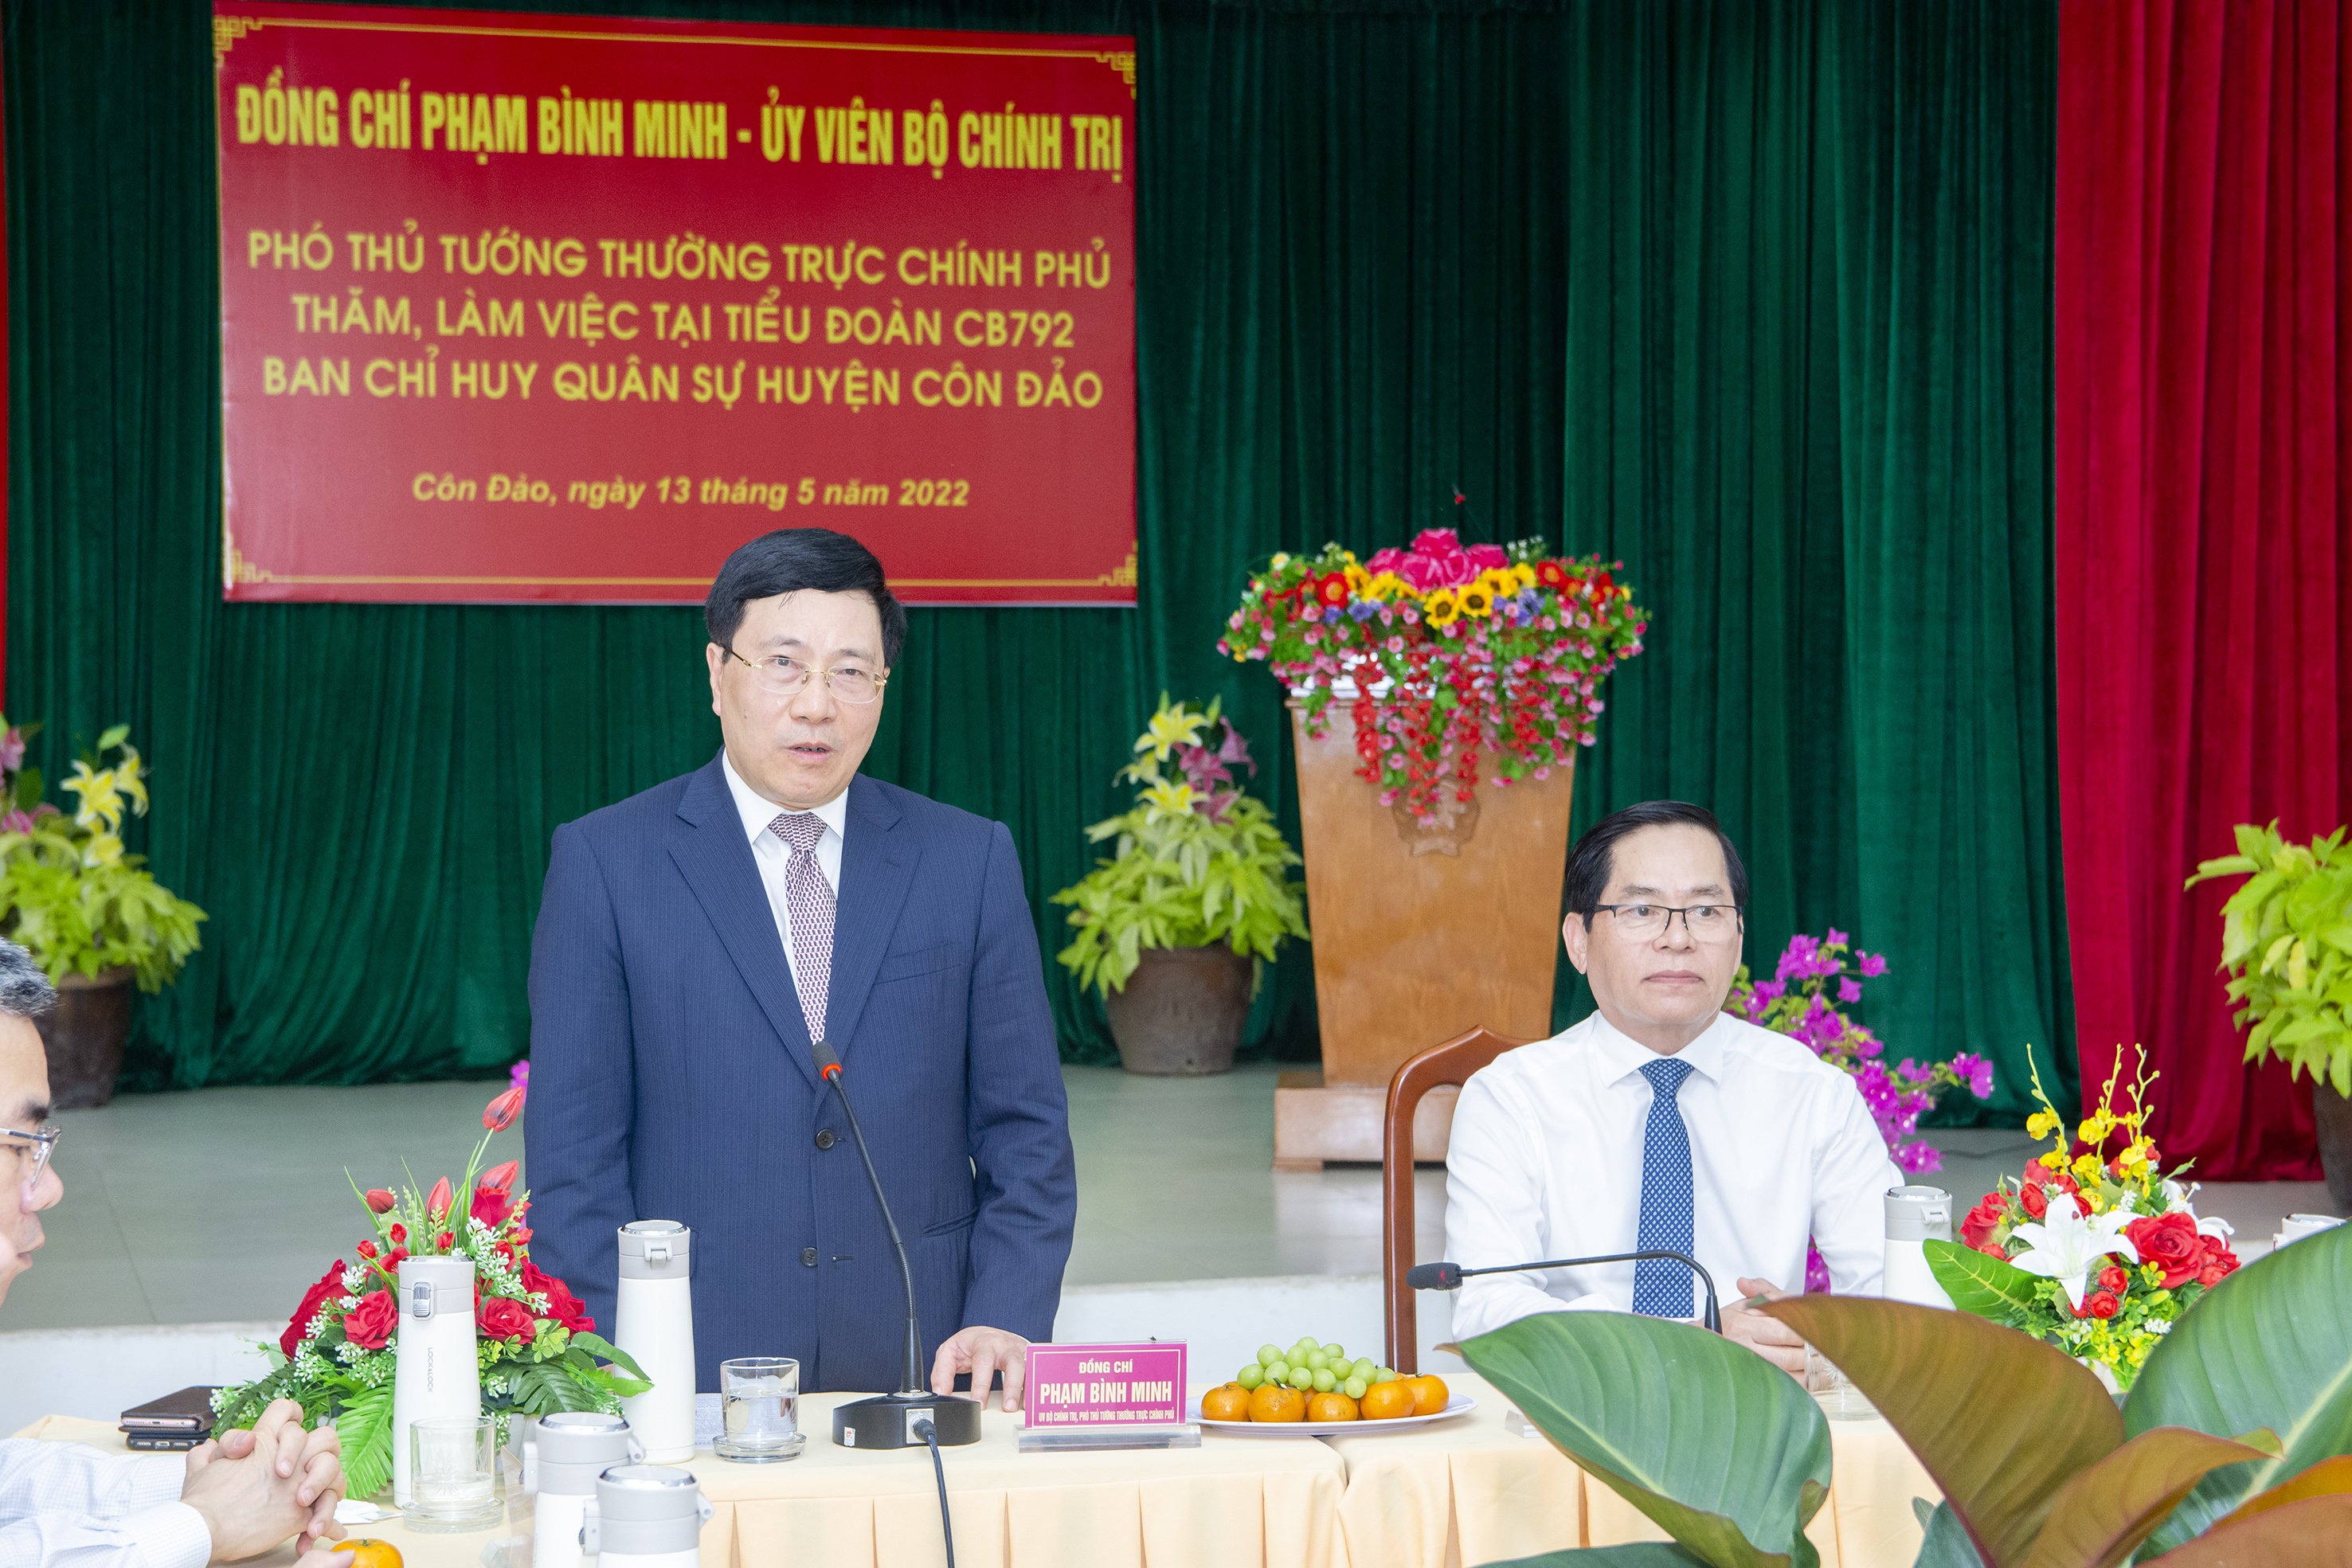 Phó Thủ tướng Thường trực Chính phủ Phạm Bình Minh ghi nhận và biểu dương những cố gắng, nỗ lực của cán bộ, chiến sĩ LLVT huyện Côn Đảo trong thực hiện thắng lợi các nhiệm vụ quân sự -  quốc phòng.